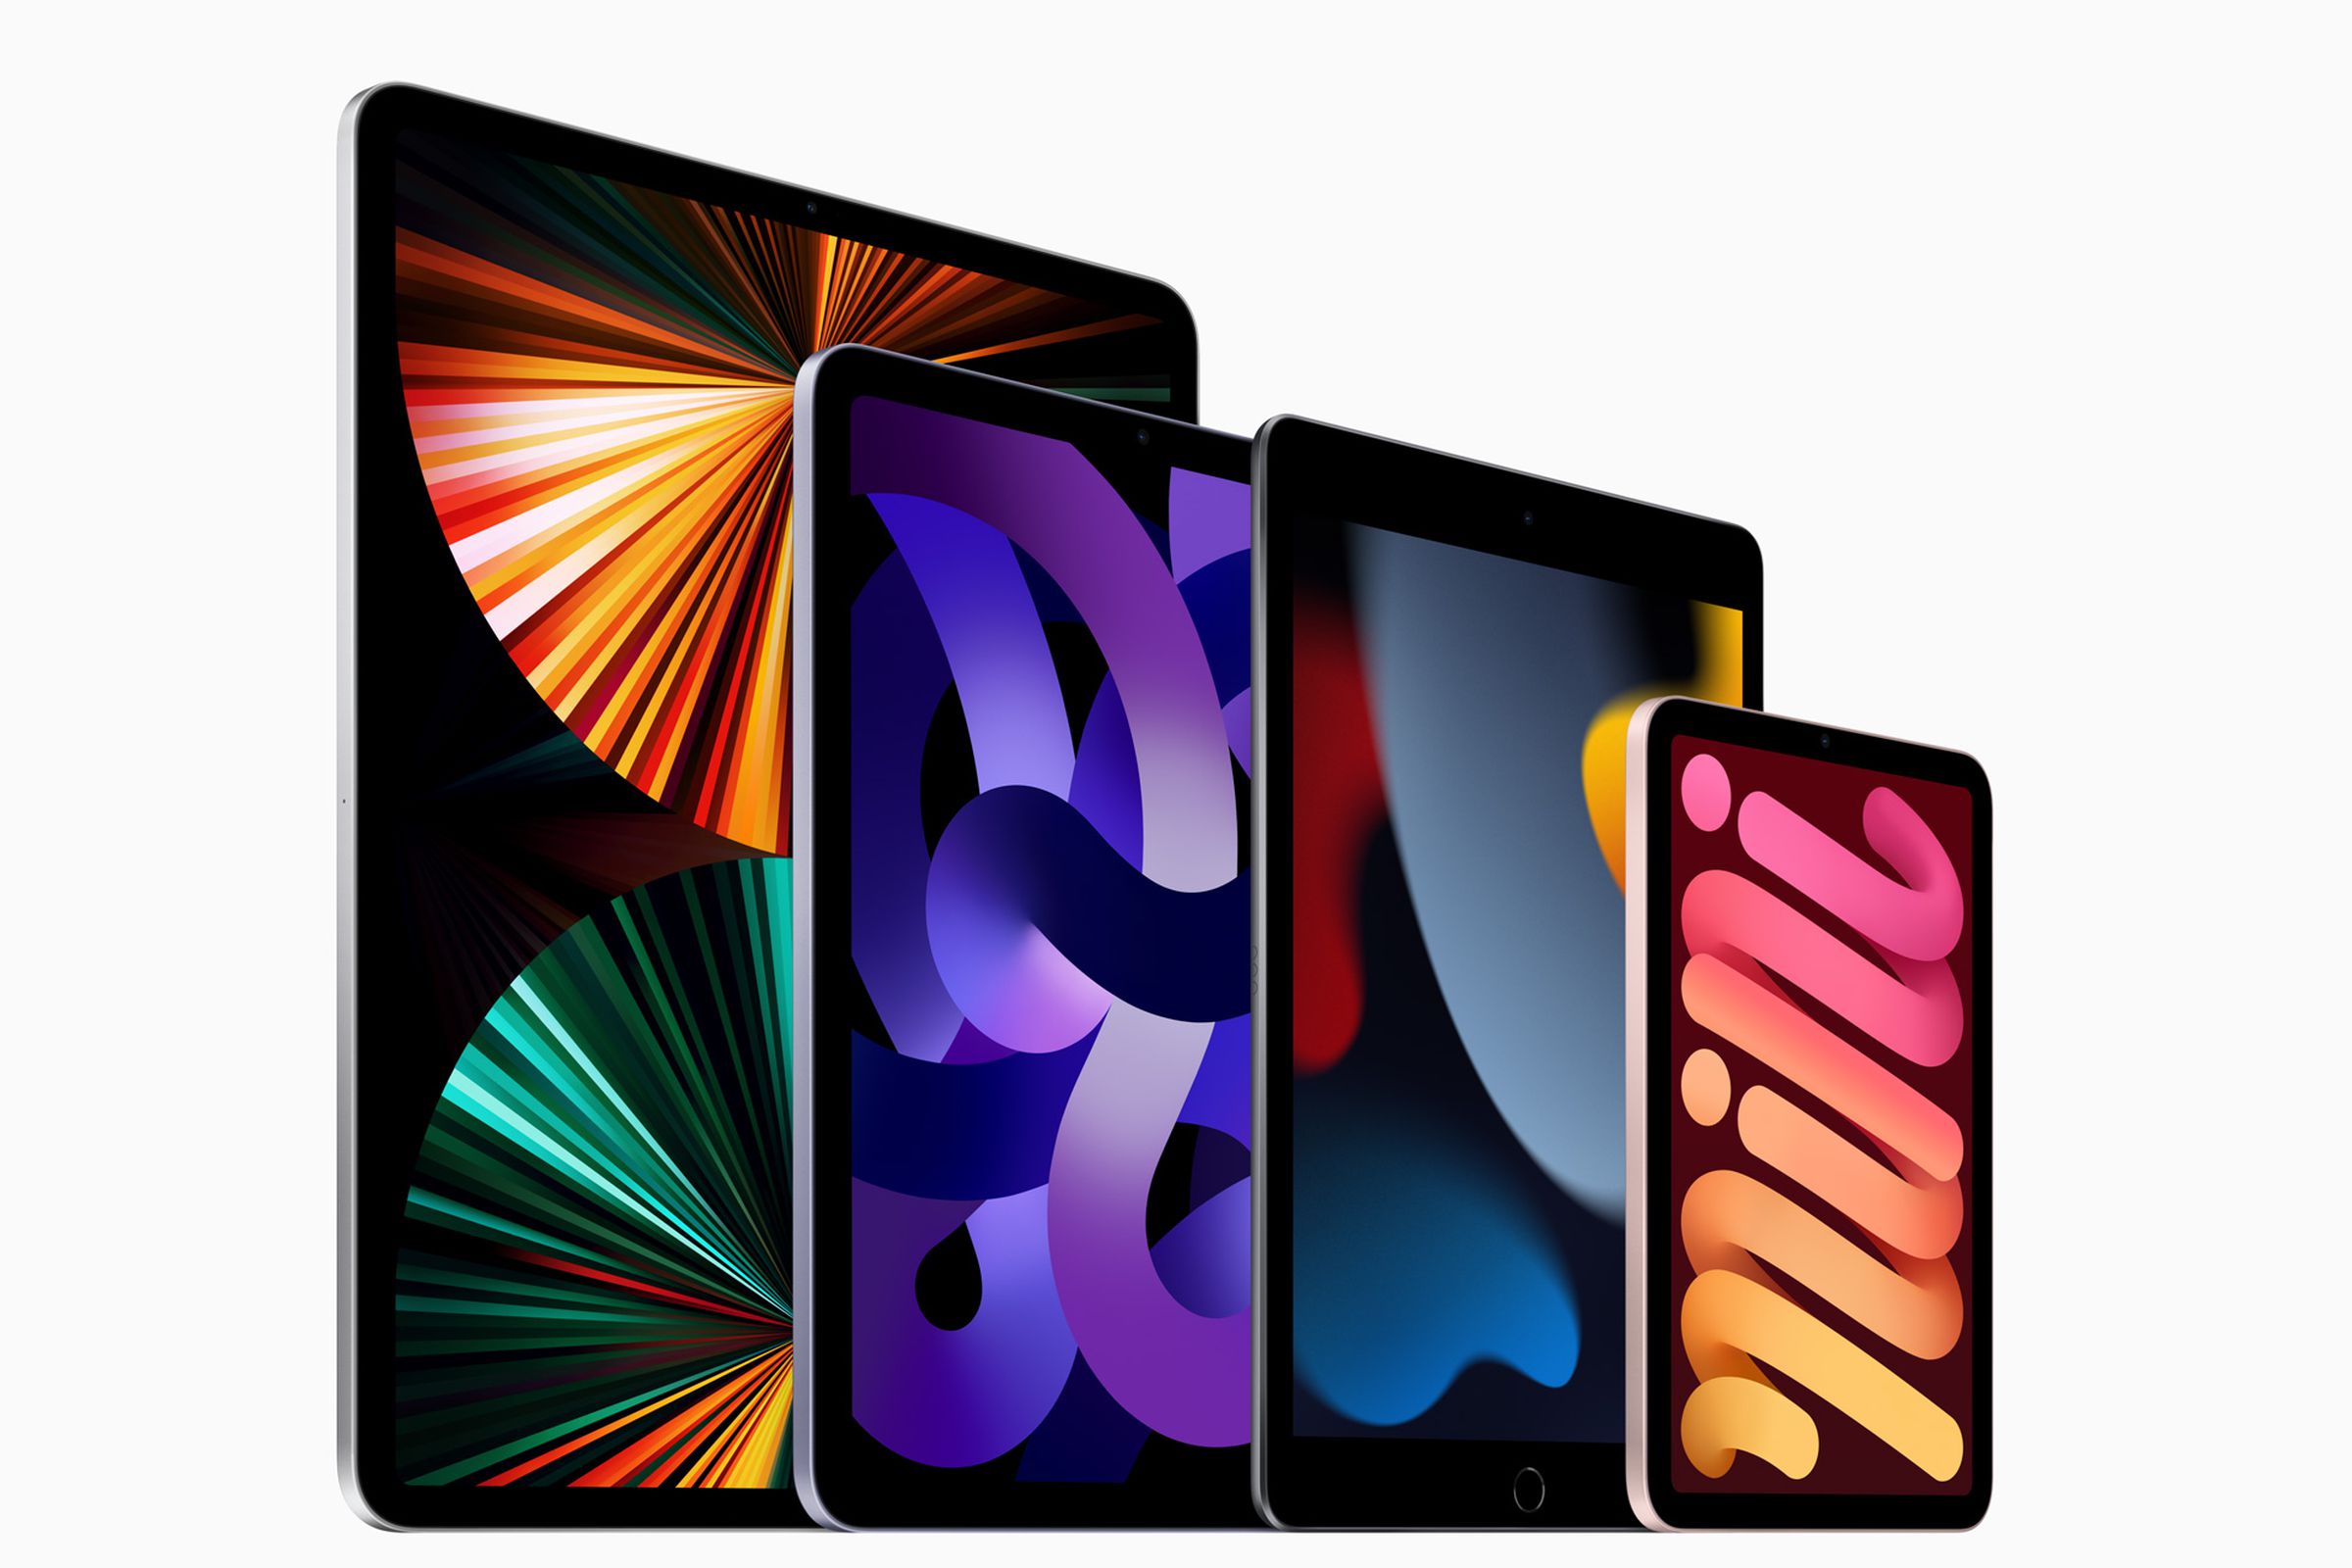 The latest iPad Pro, iPad Air, iPad, and iPad Mini (from left to right).